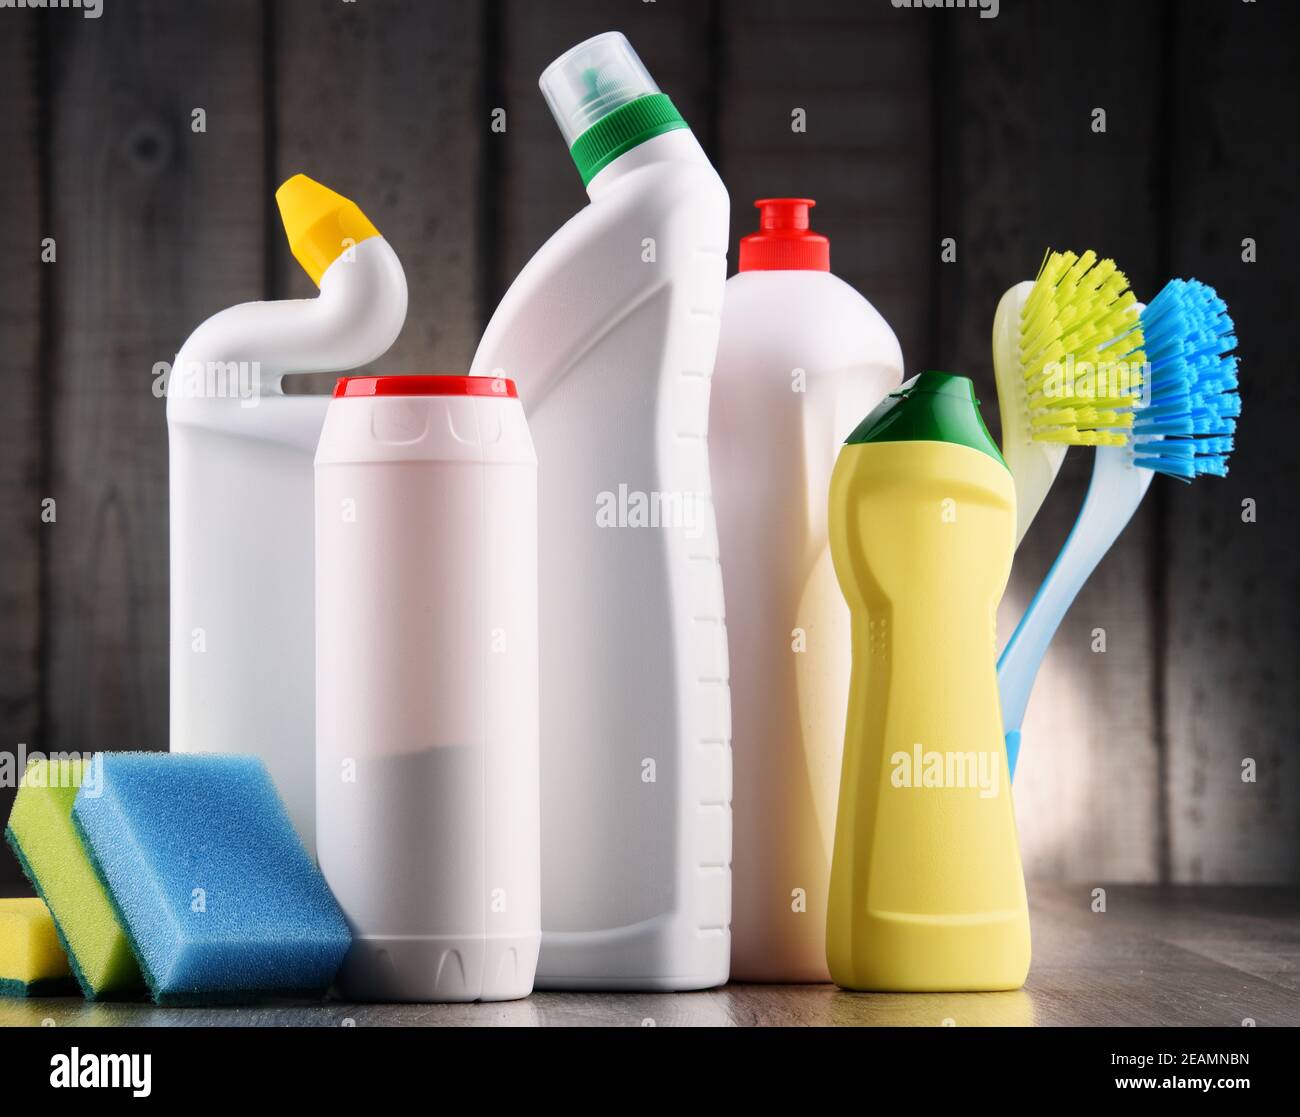 Vielzahl von Reinigungsmittel-Flaschen und chemische Reinigungsmittel  Stockfotografie - Alamy